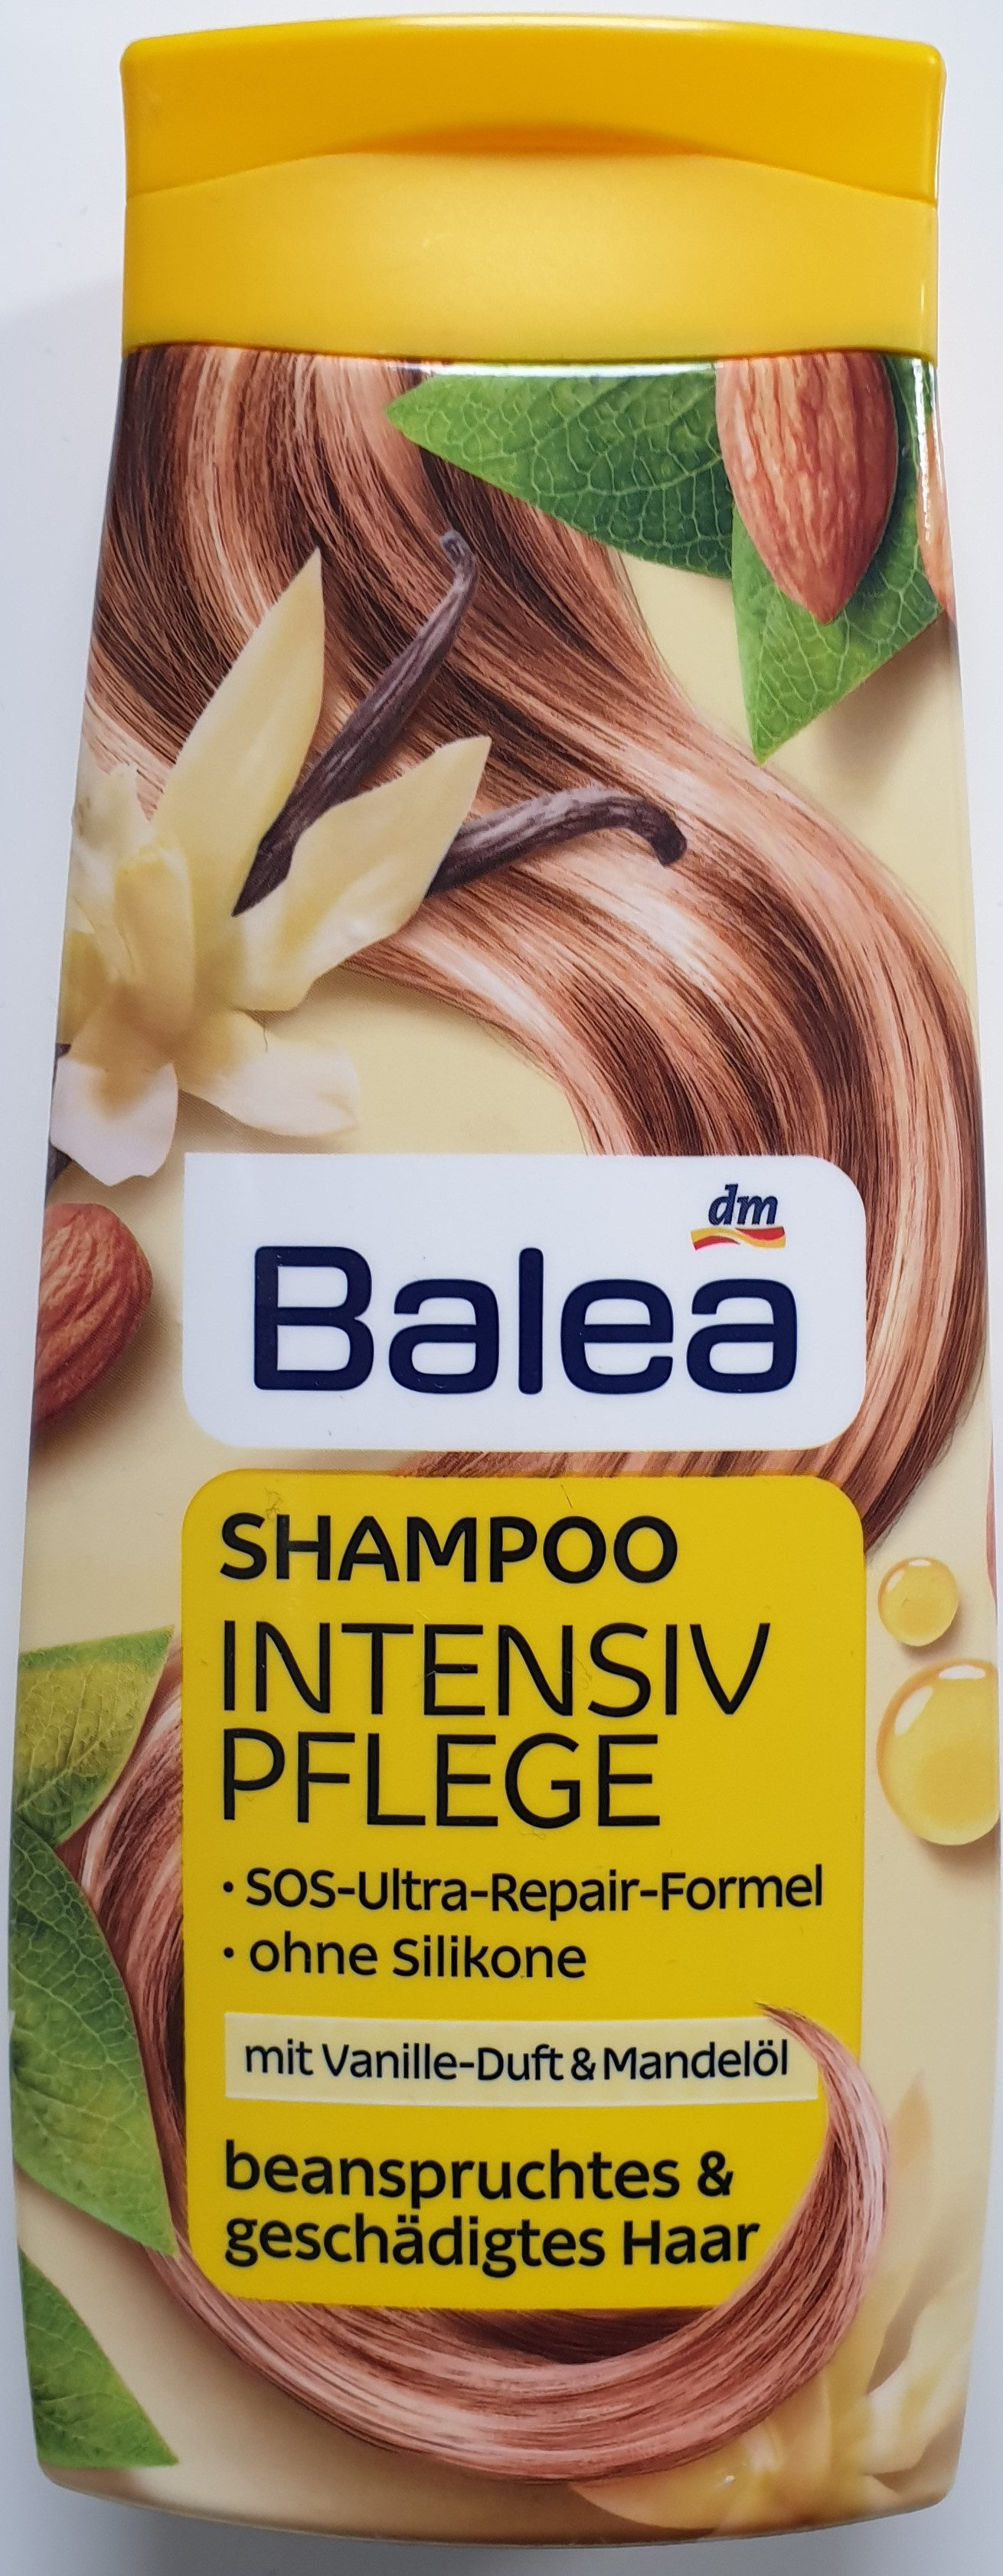 Shampoo Intensiv Pflege mit Vanille-Duft und Mandelöl - Produkt - de